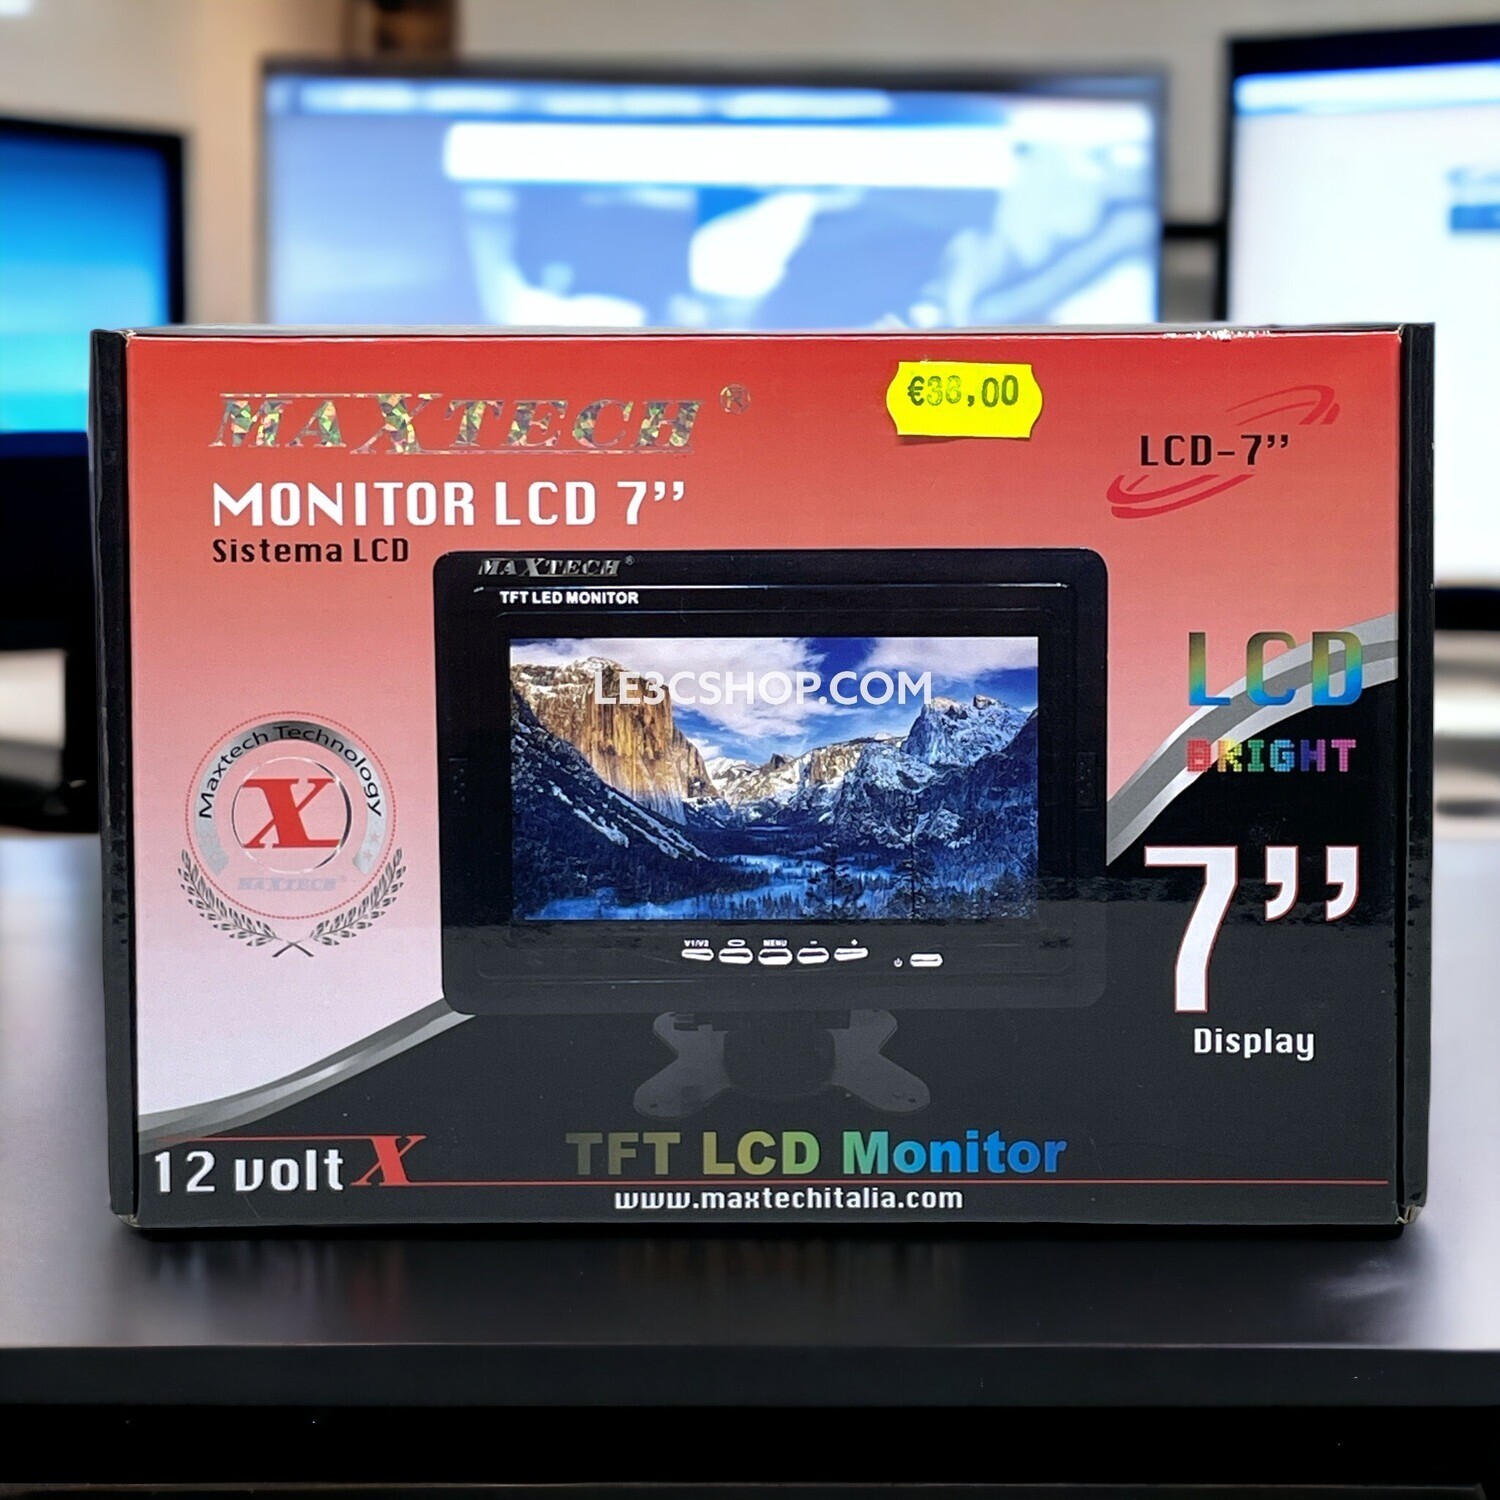 Monitor LCD 7" Video 12v PAL Maxtech: Visualizzazione chiara e flessibile